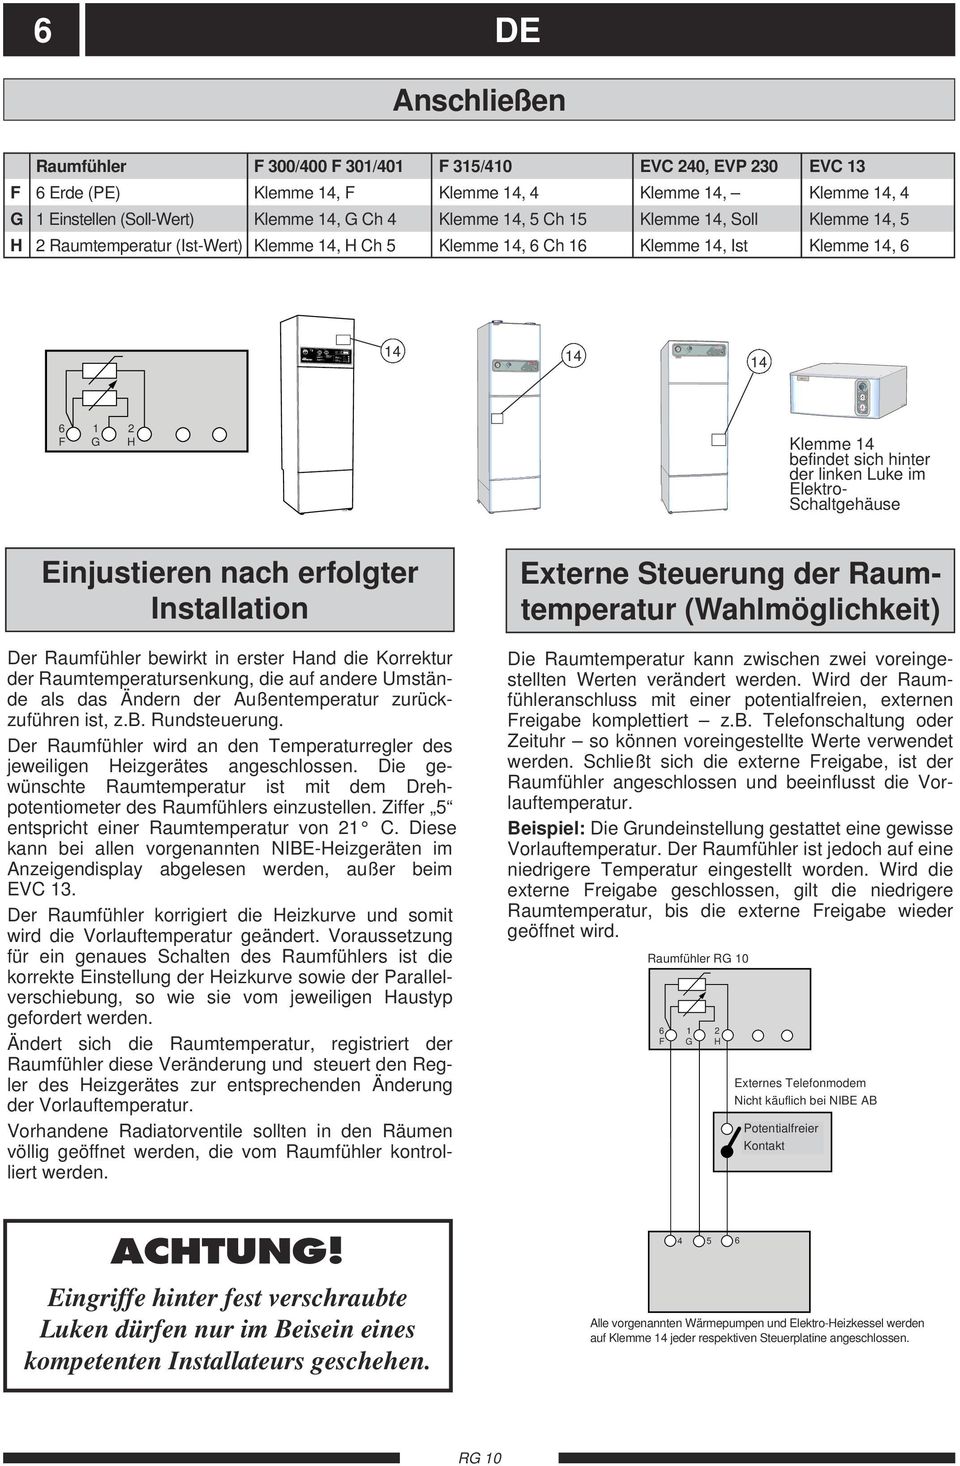 8 R 3 Kompressor Avfrostning Elpatron Kanal Värde Blinkande lampor: Se instruktion bakom övre luckan!